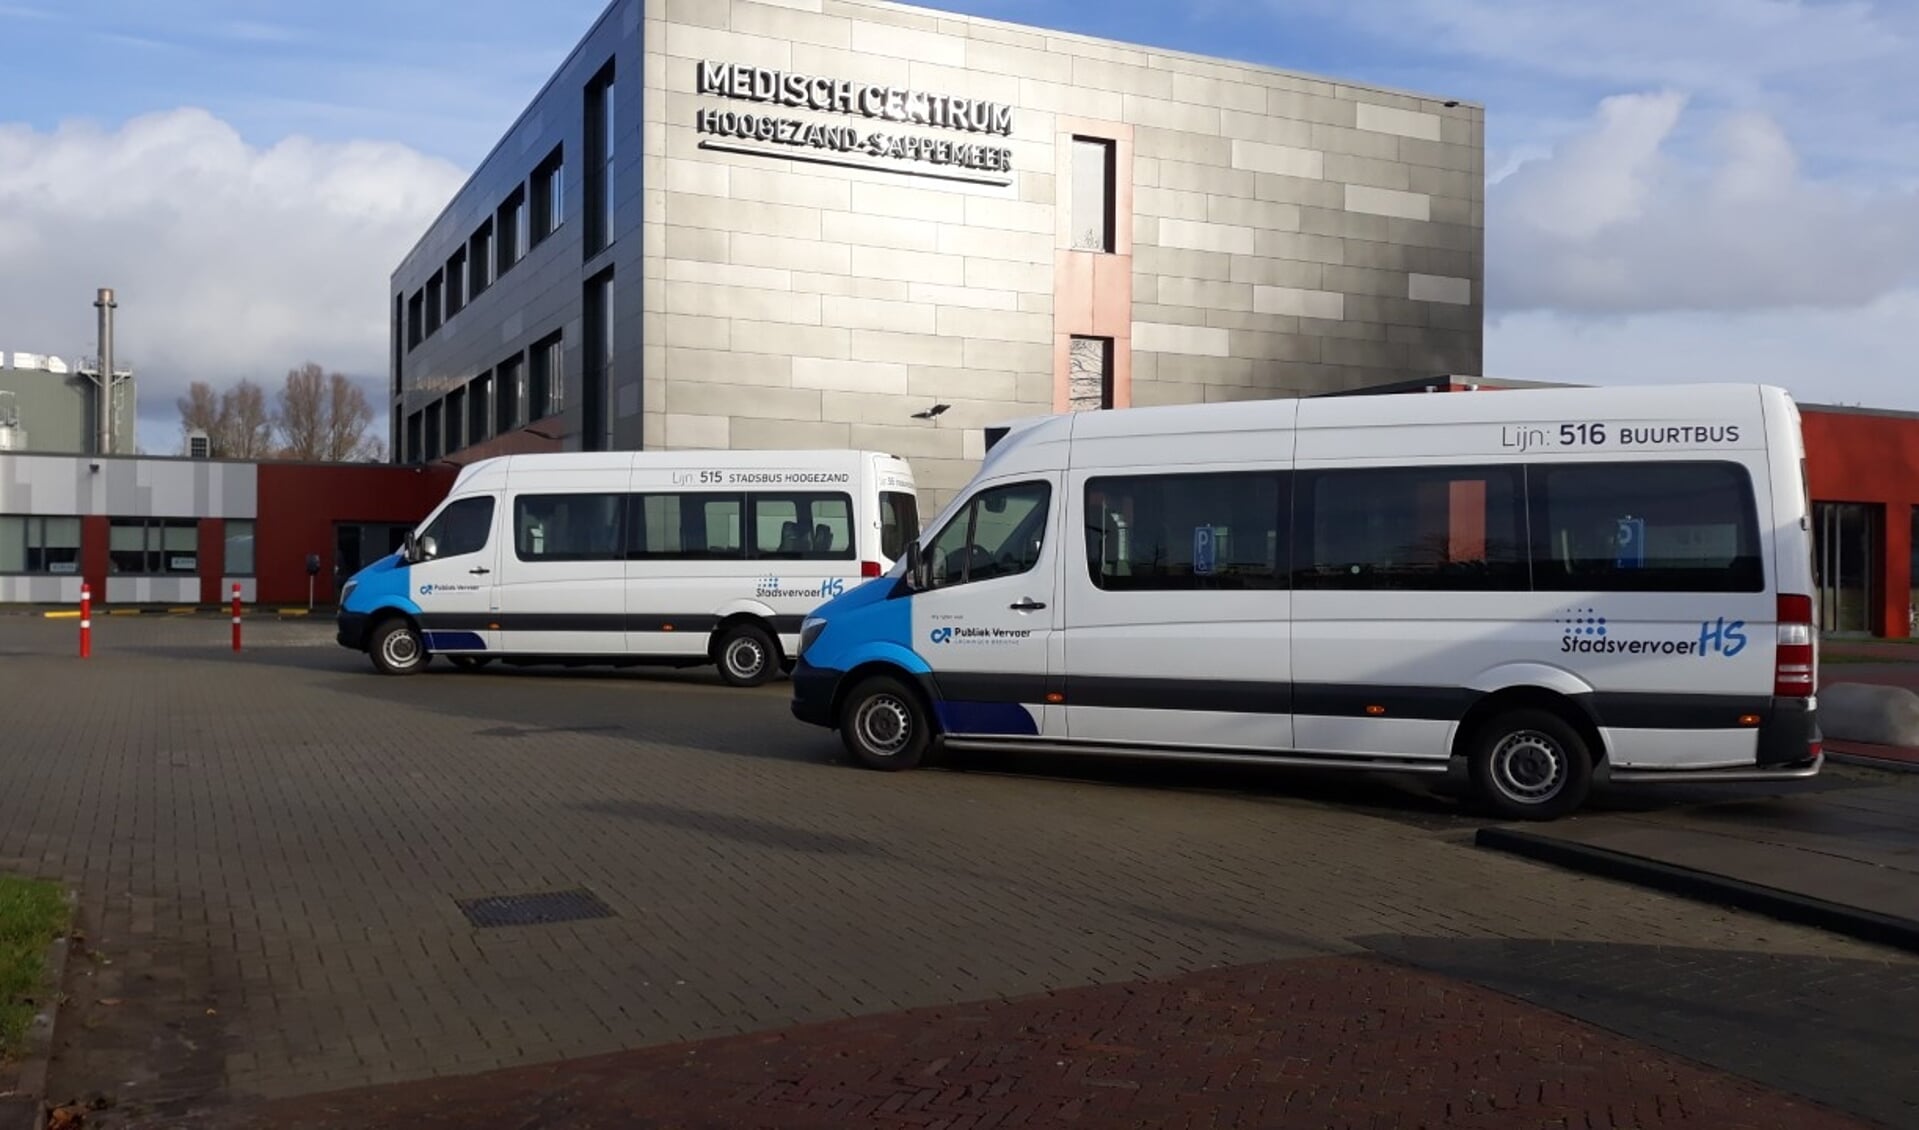 De stadsbus en buurtbus van Stichting Stadsvervoer HS rijden vanaf morgen weer.